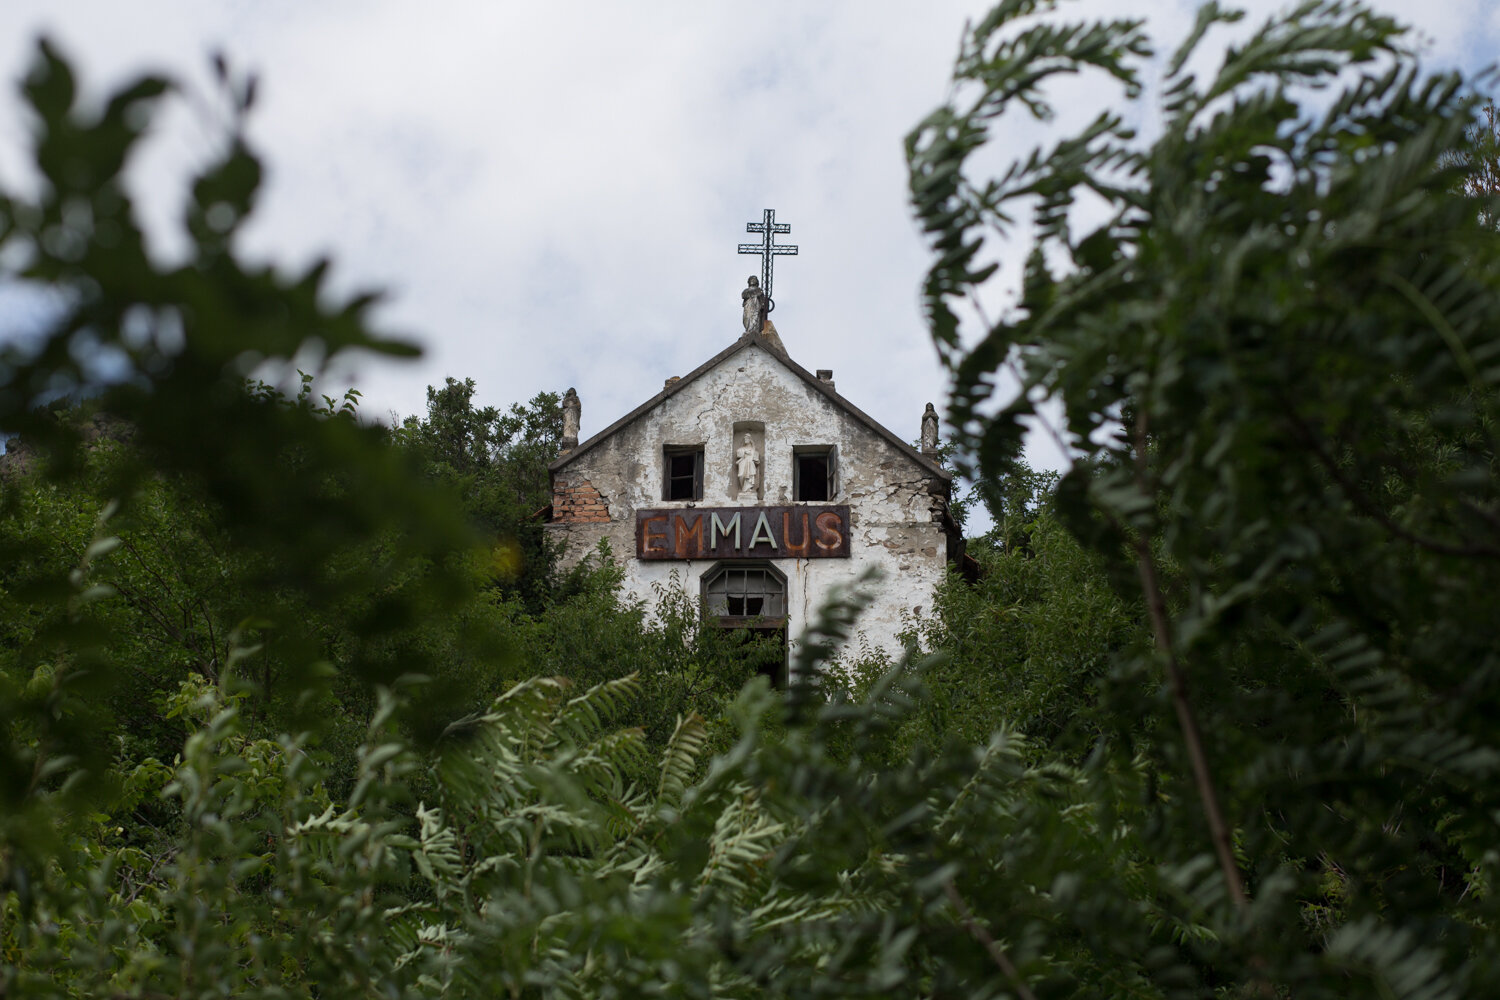 Menedékből romhalmaz: az Emmaus kápolna szép múltja és szomorú jelene